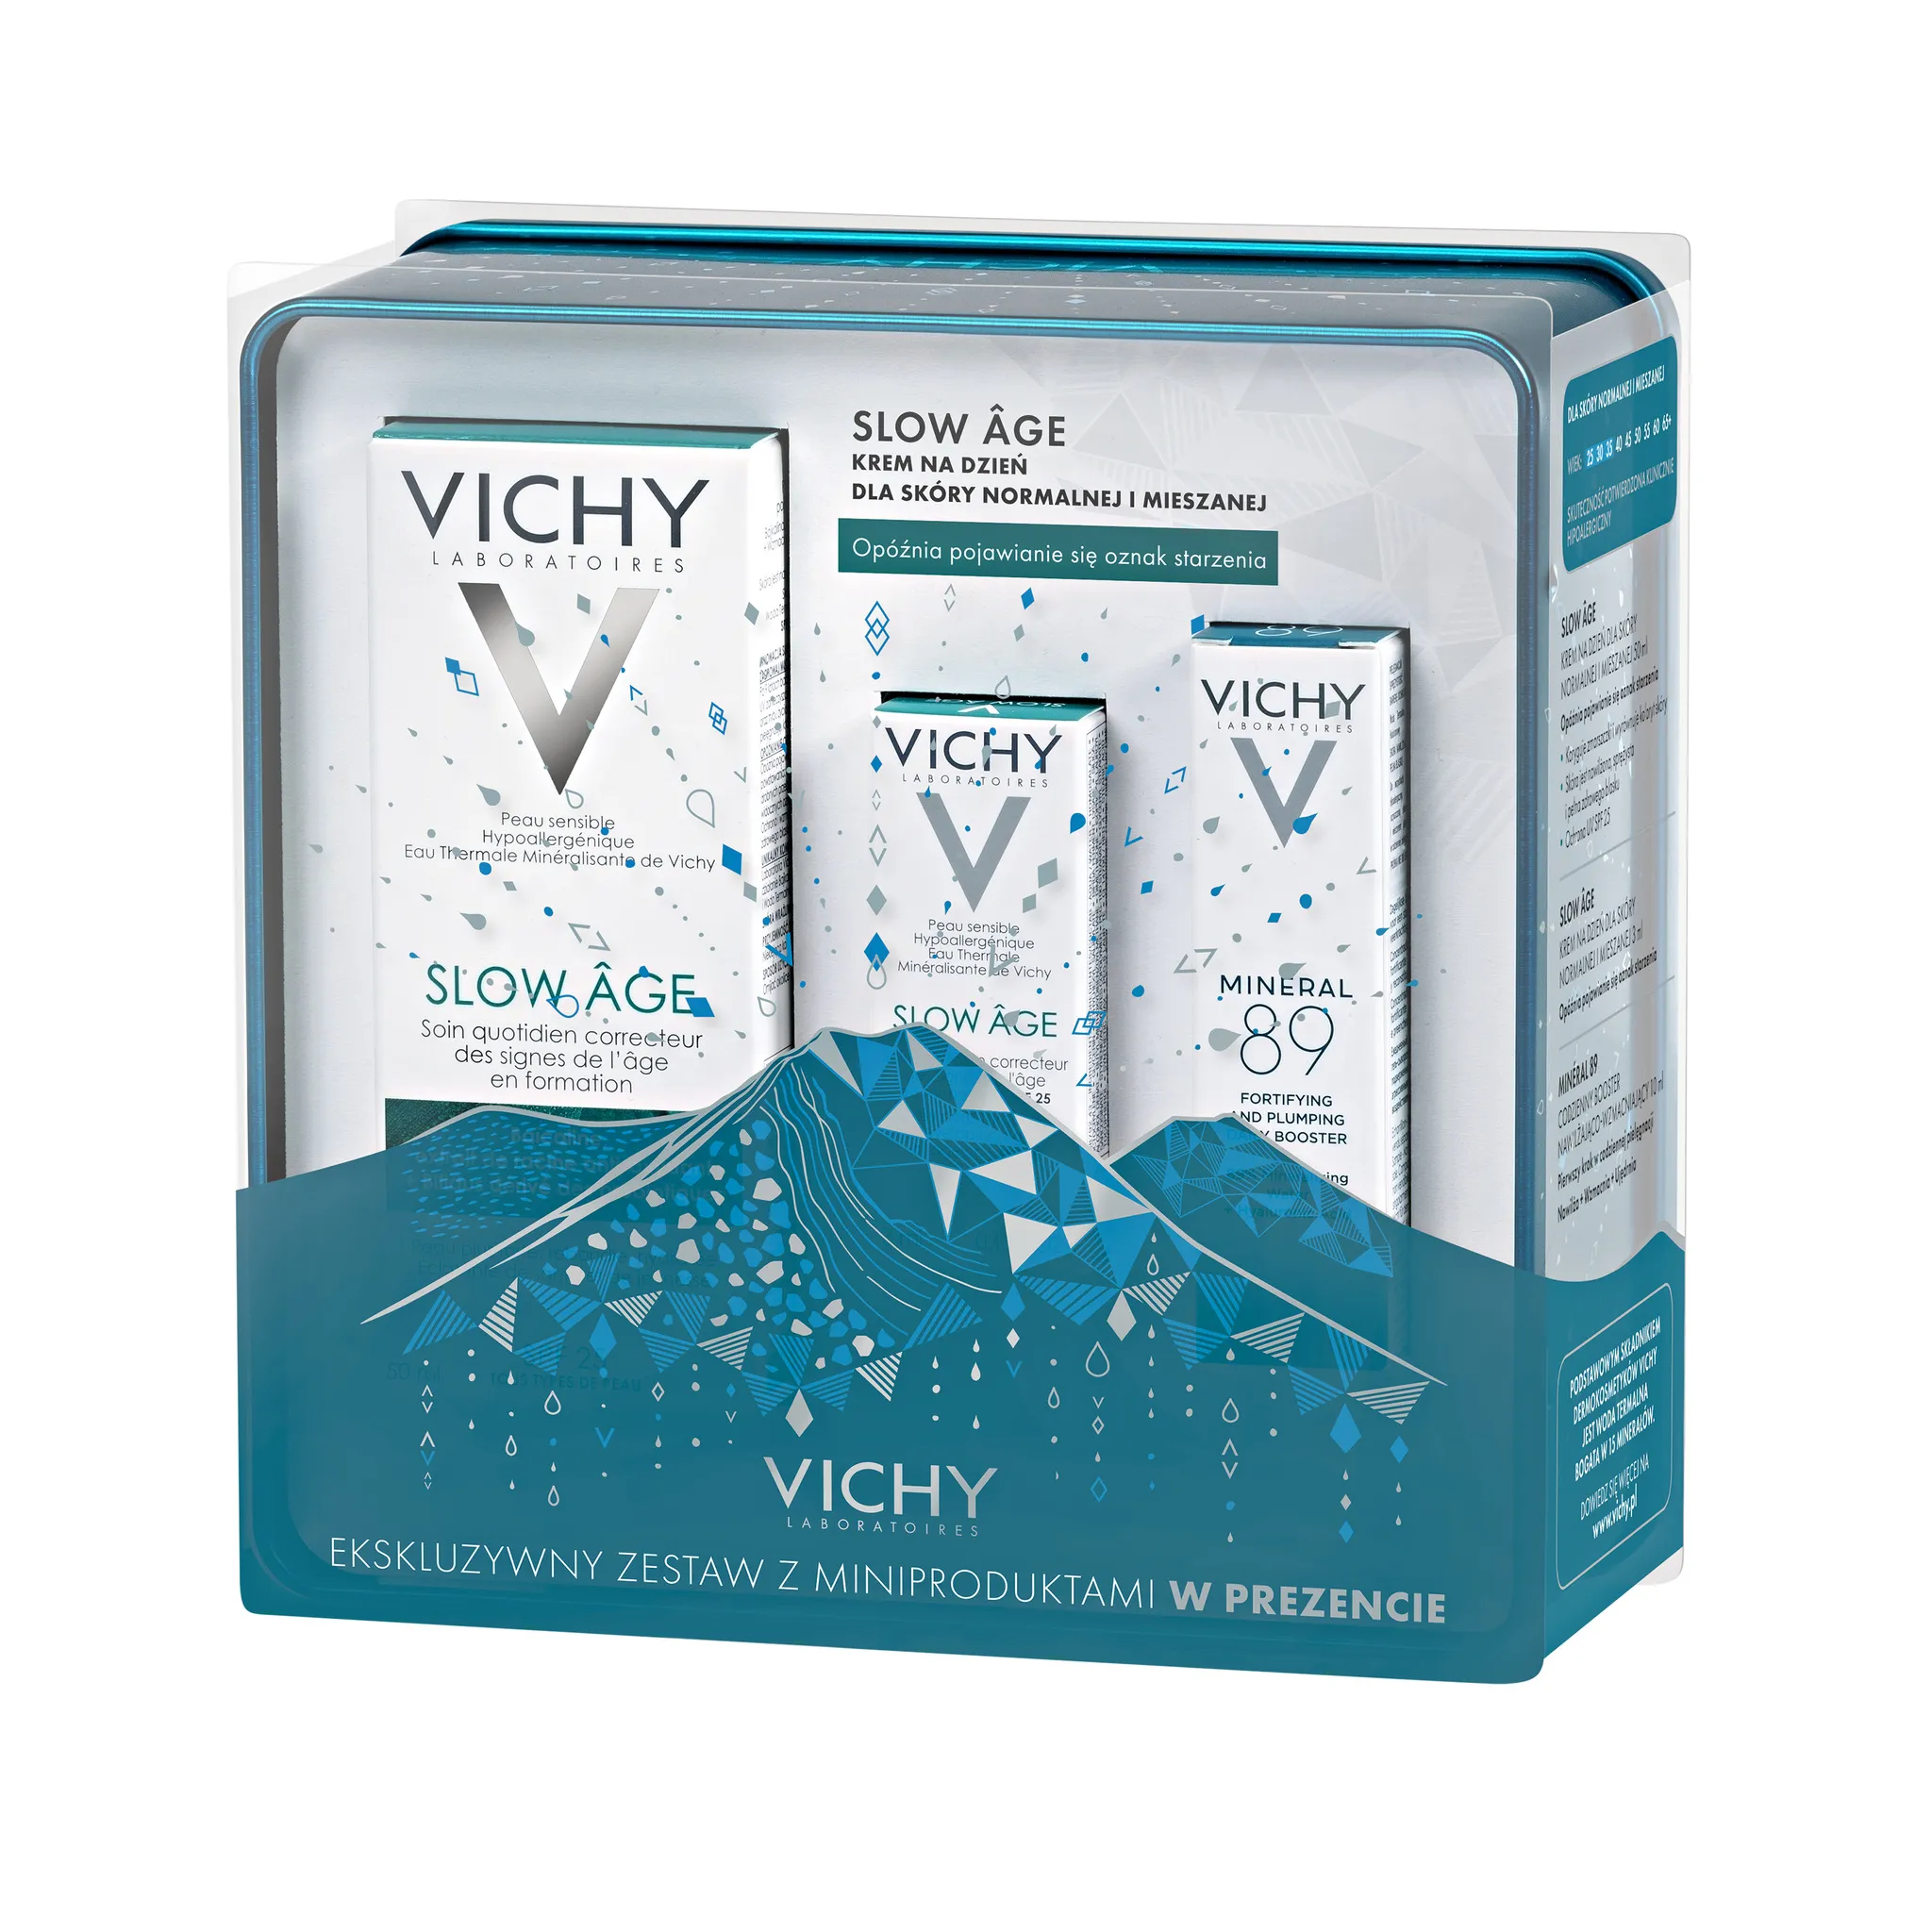 Vichy zestaw Slow Age, krem na dzień do skóry normalnej i mieszanej, 50 ml + krem na dzień do skóry normalnej i mieszanej, 3ml + booster nawilżająco-wzmacniający Mineral 89, 10ml